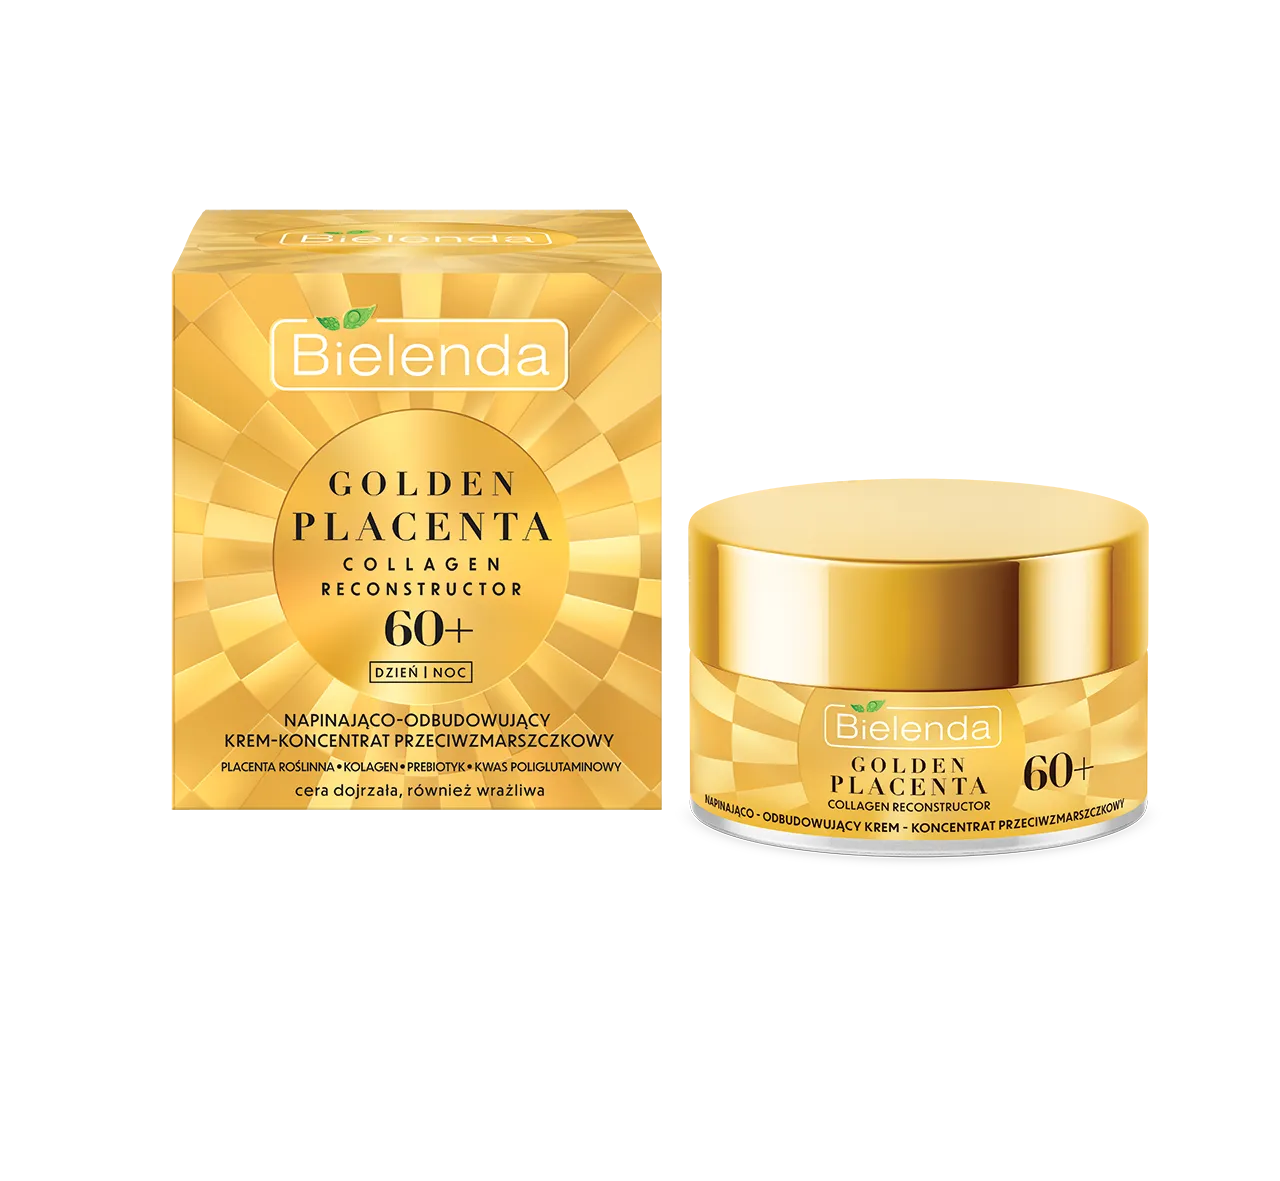 Bielenda Golden Placenta Collagen Reconstructor napinająco-odbudowujący krem-koncentrat przeciwzmarszczkowy 60+, 50 ml